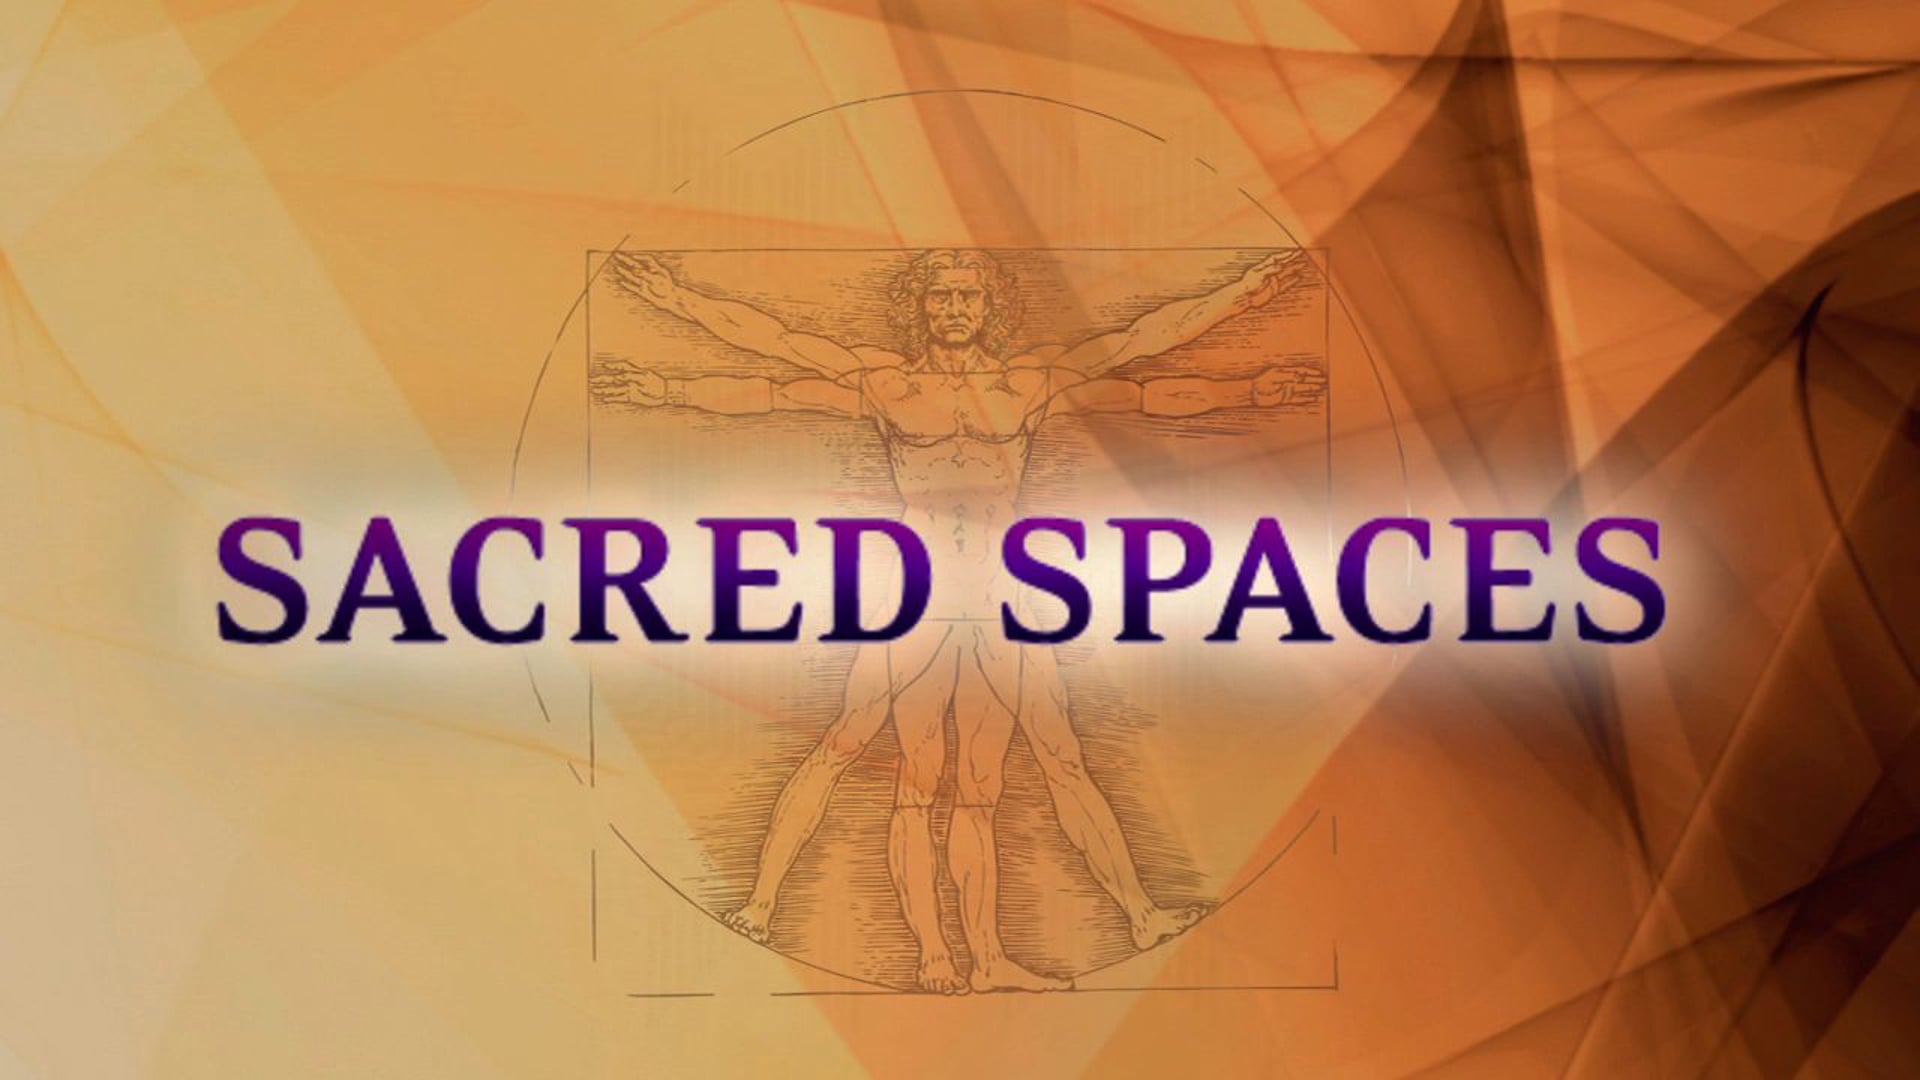 Sacred Spaces Sizzle Reel 10:11